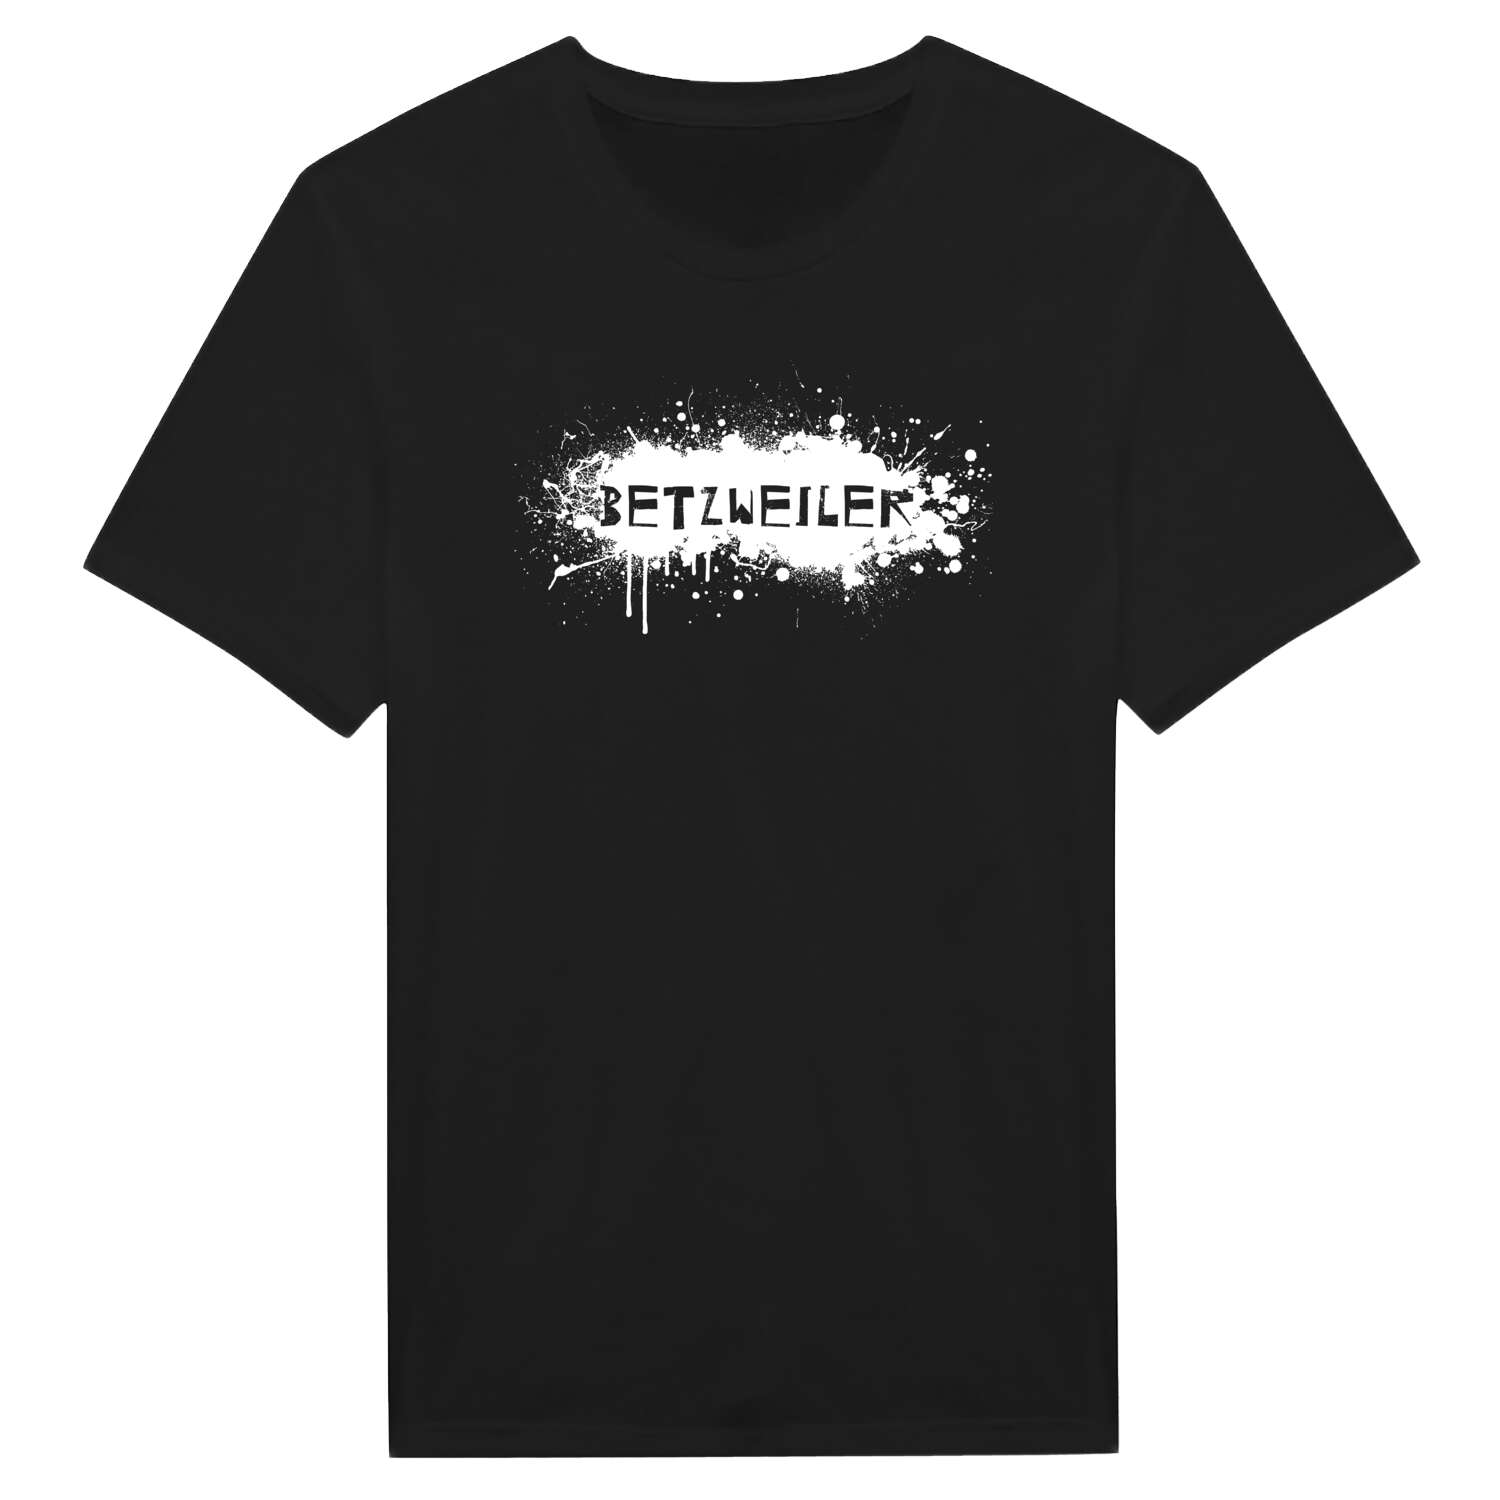 Betzweiler T-Shirt »Paint Splash Punk«